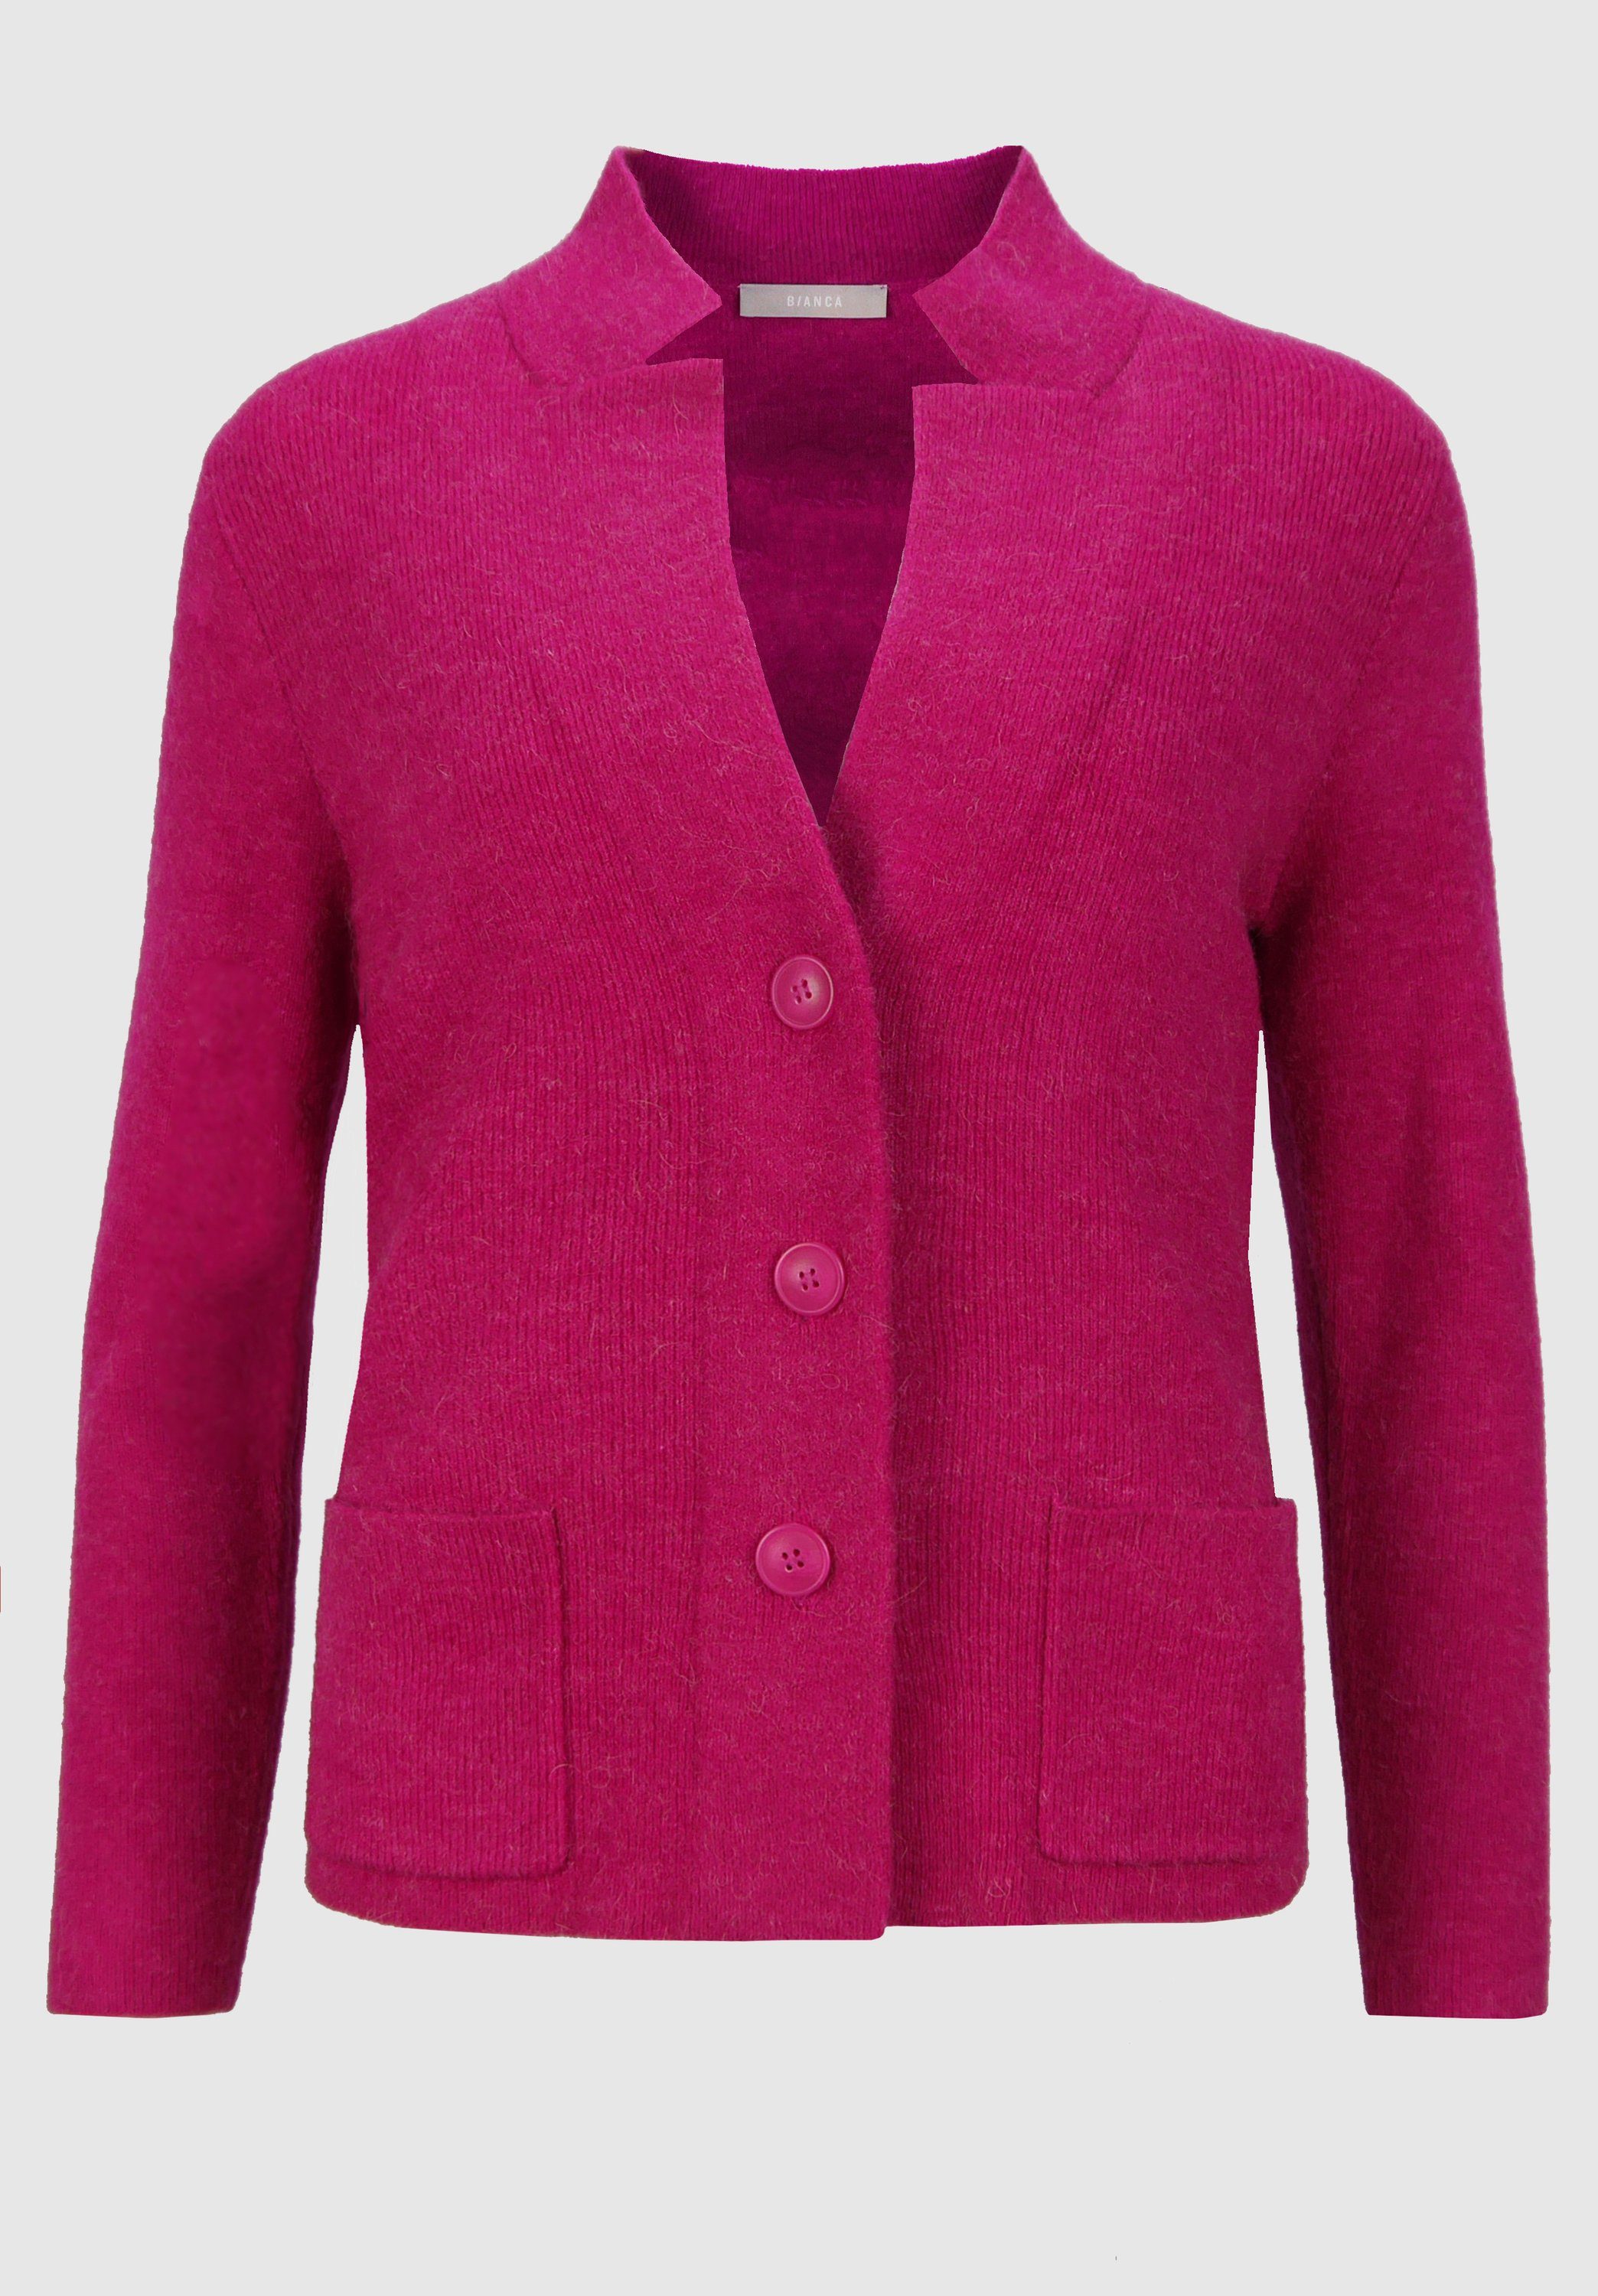 bianca Strickjacke KOSMOS mit modernem Ausschnitt und in angesagten Farben cool pink melange